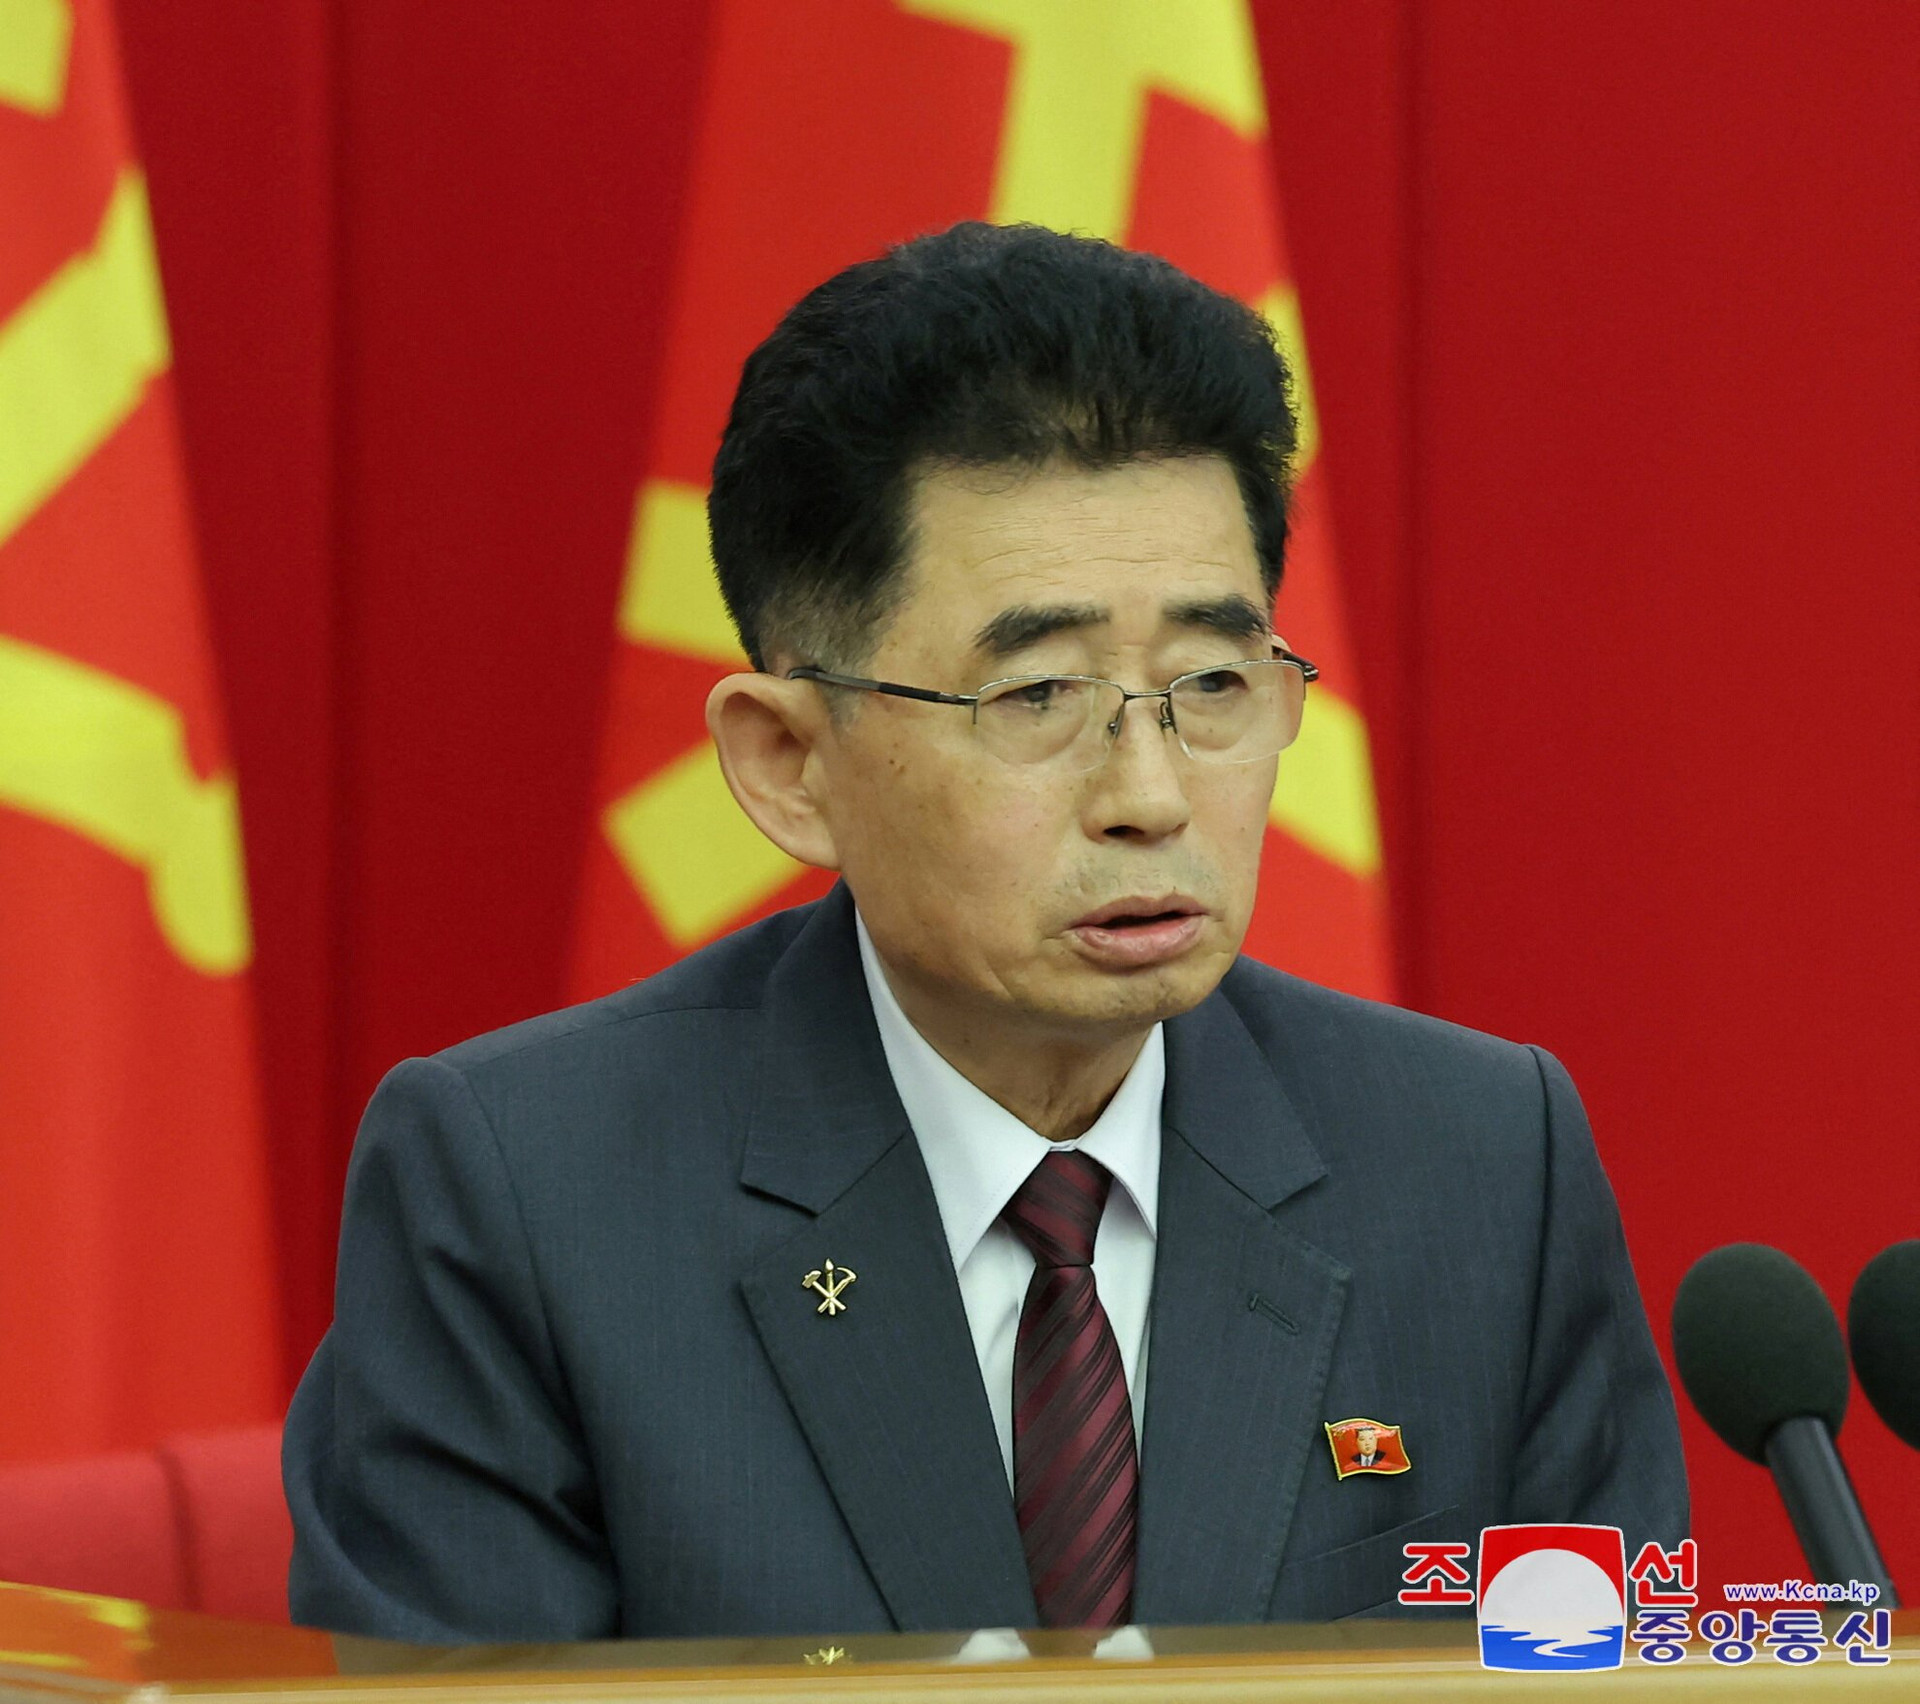 Ông Kim Sung-nam - người đứng đầu Ban Quan hệ quốc tế của Đảng Lao động Triều Tiên, đeo huy hiệu của nhà lãnh đạo Kim Jong-un trong cuộc họp ngày 29/7.(Ảnh: KCNA)